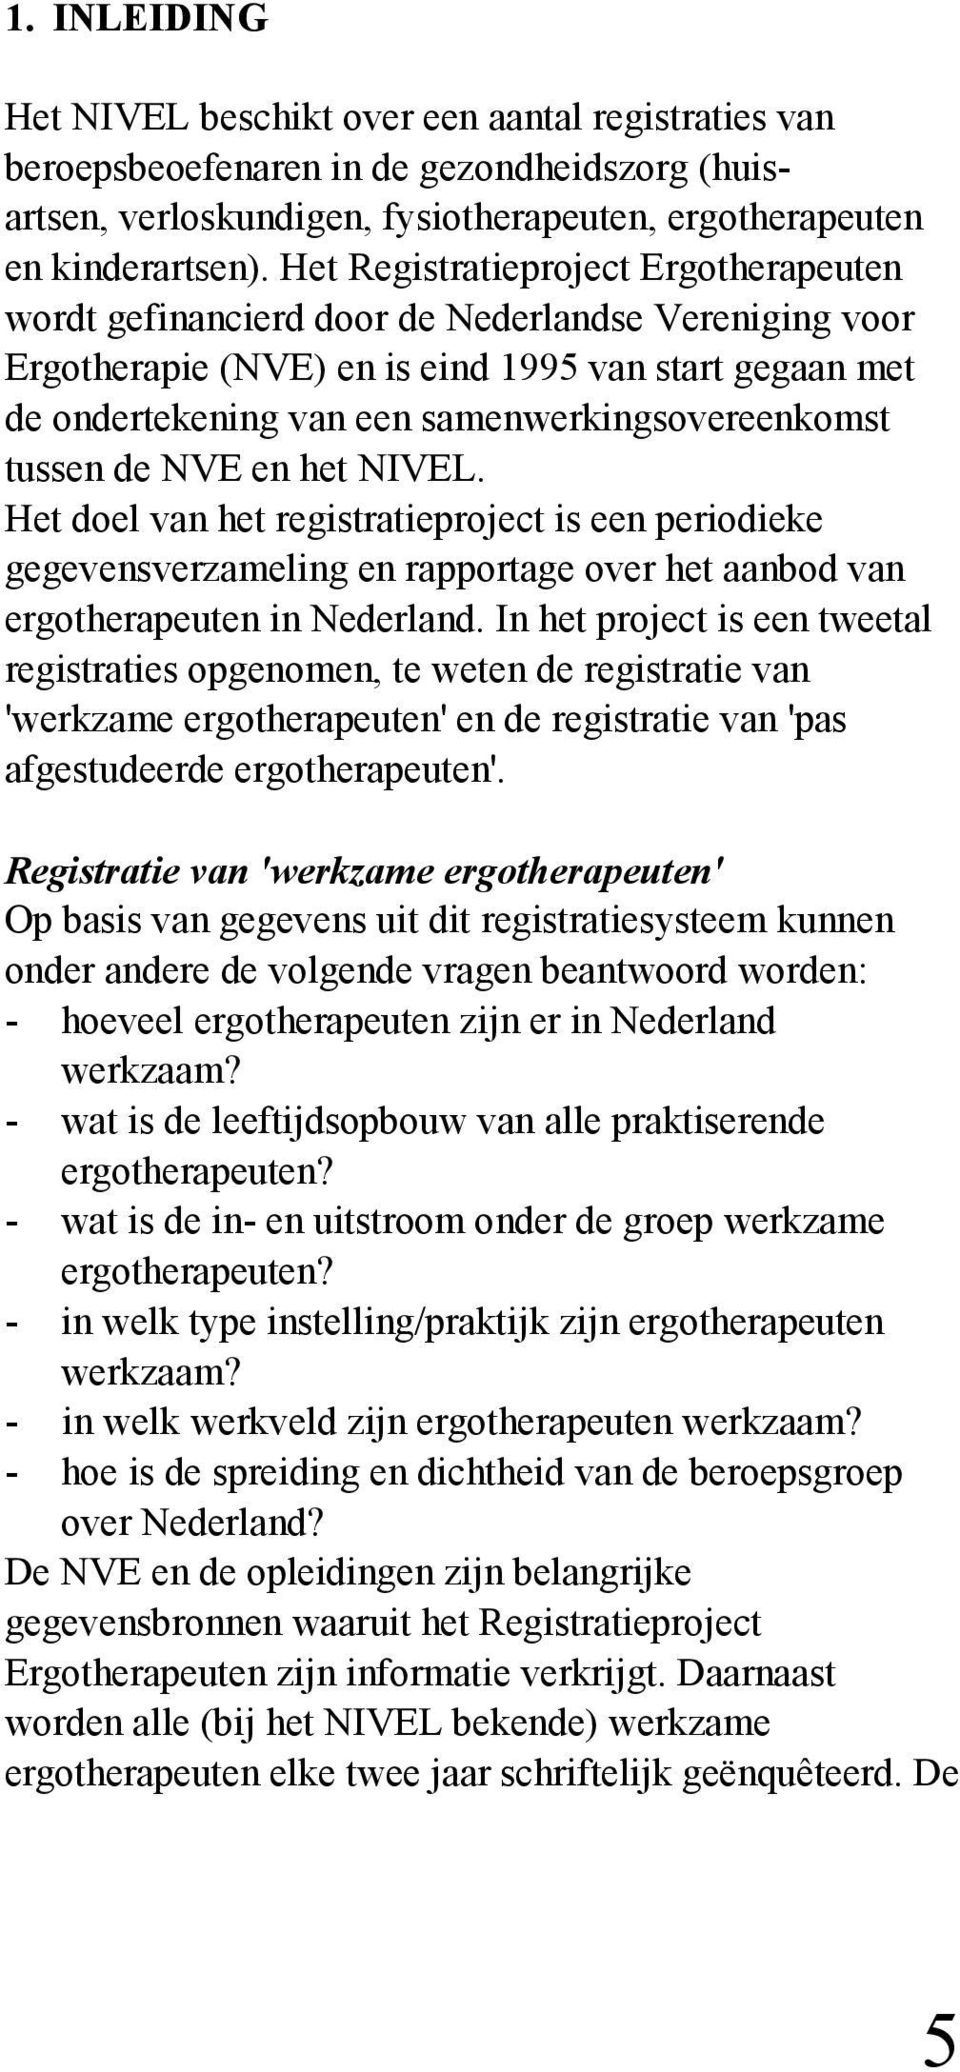 samenwerkingsovereenkomst tussen de NVE en het NIVEL. Het doel van het registratieproject is een periodieke gegevensverzameling en rapportage over het aanbod van ergotherapeuten in Nederland.